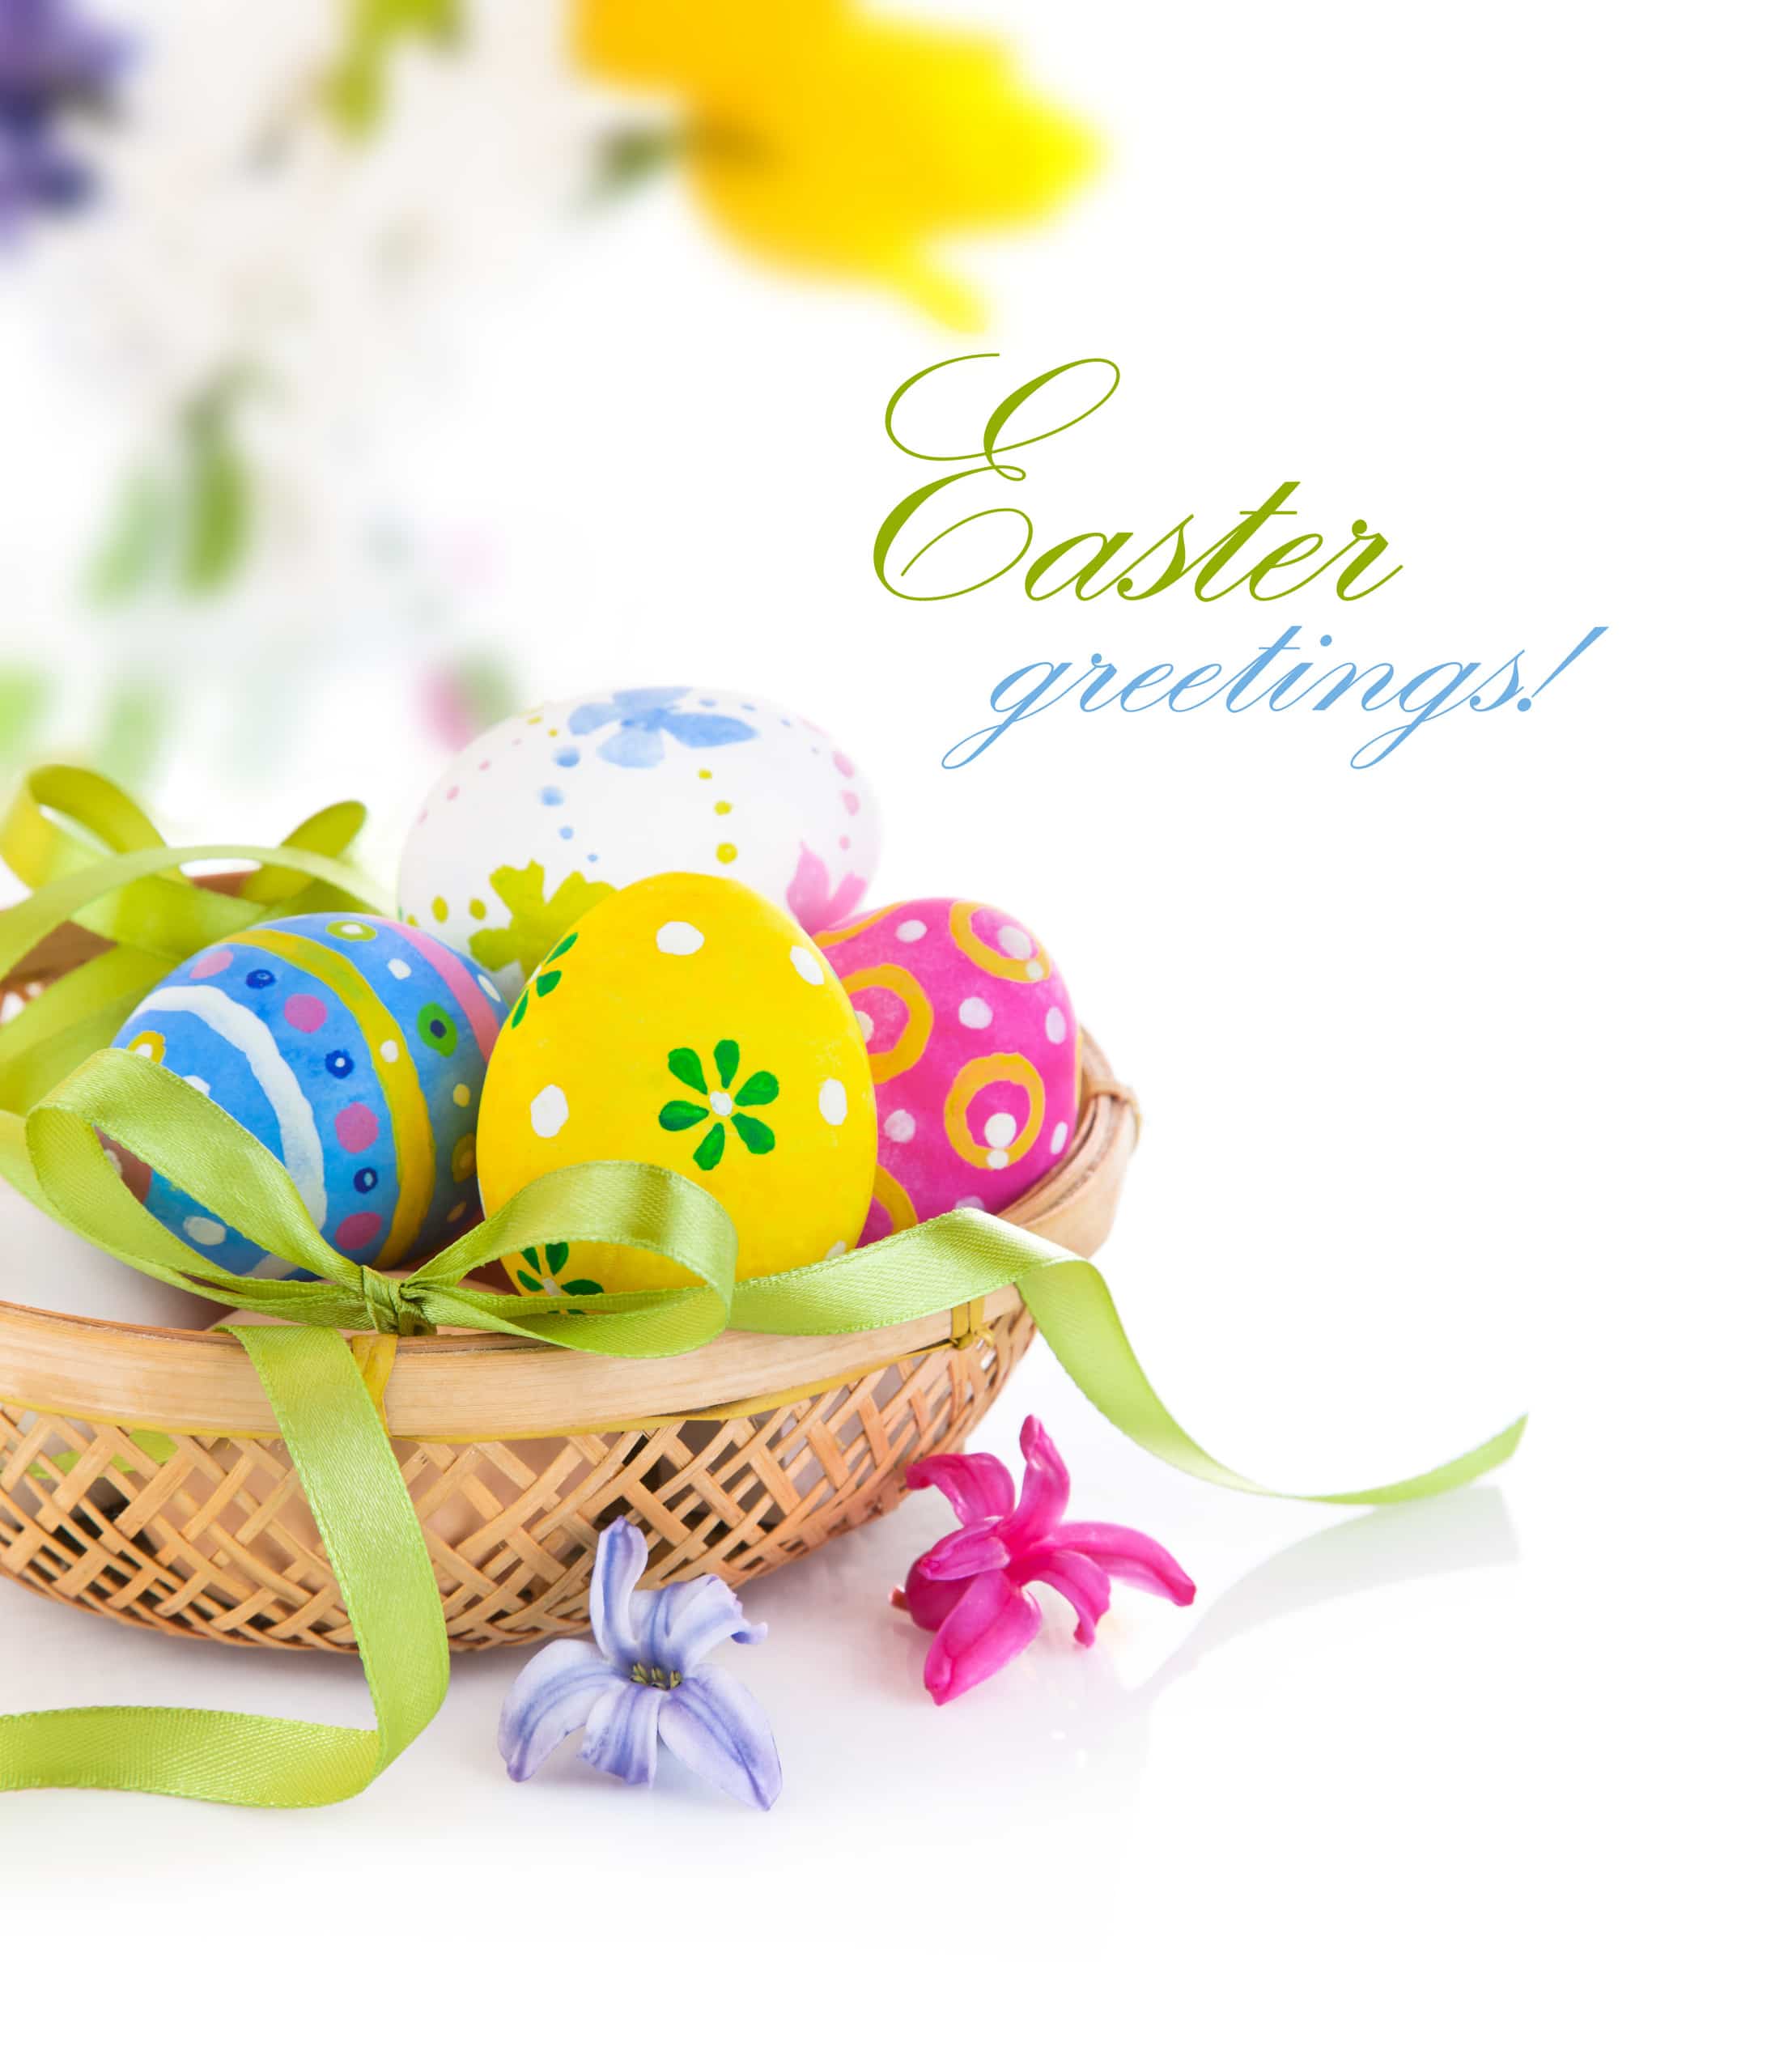 Easter greetings beautiful eggs in basket